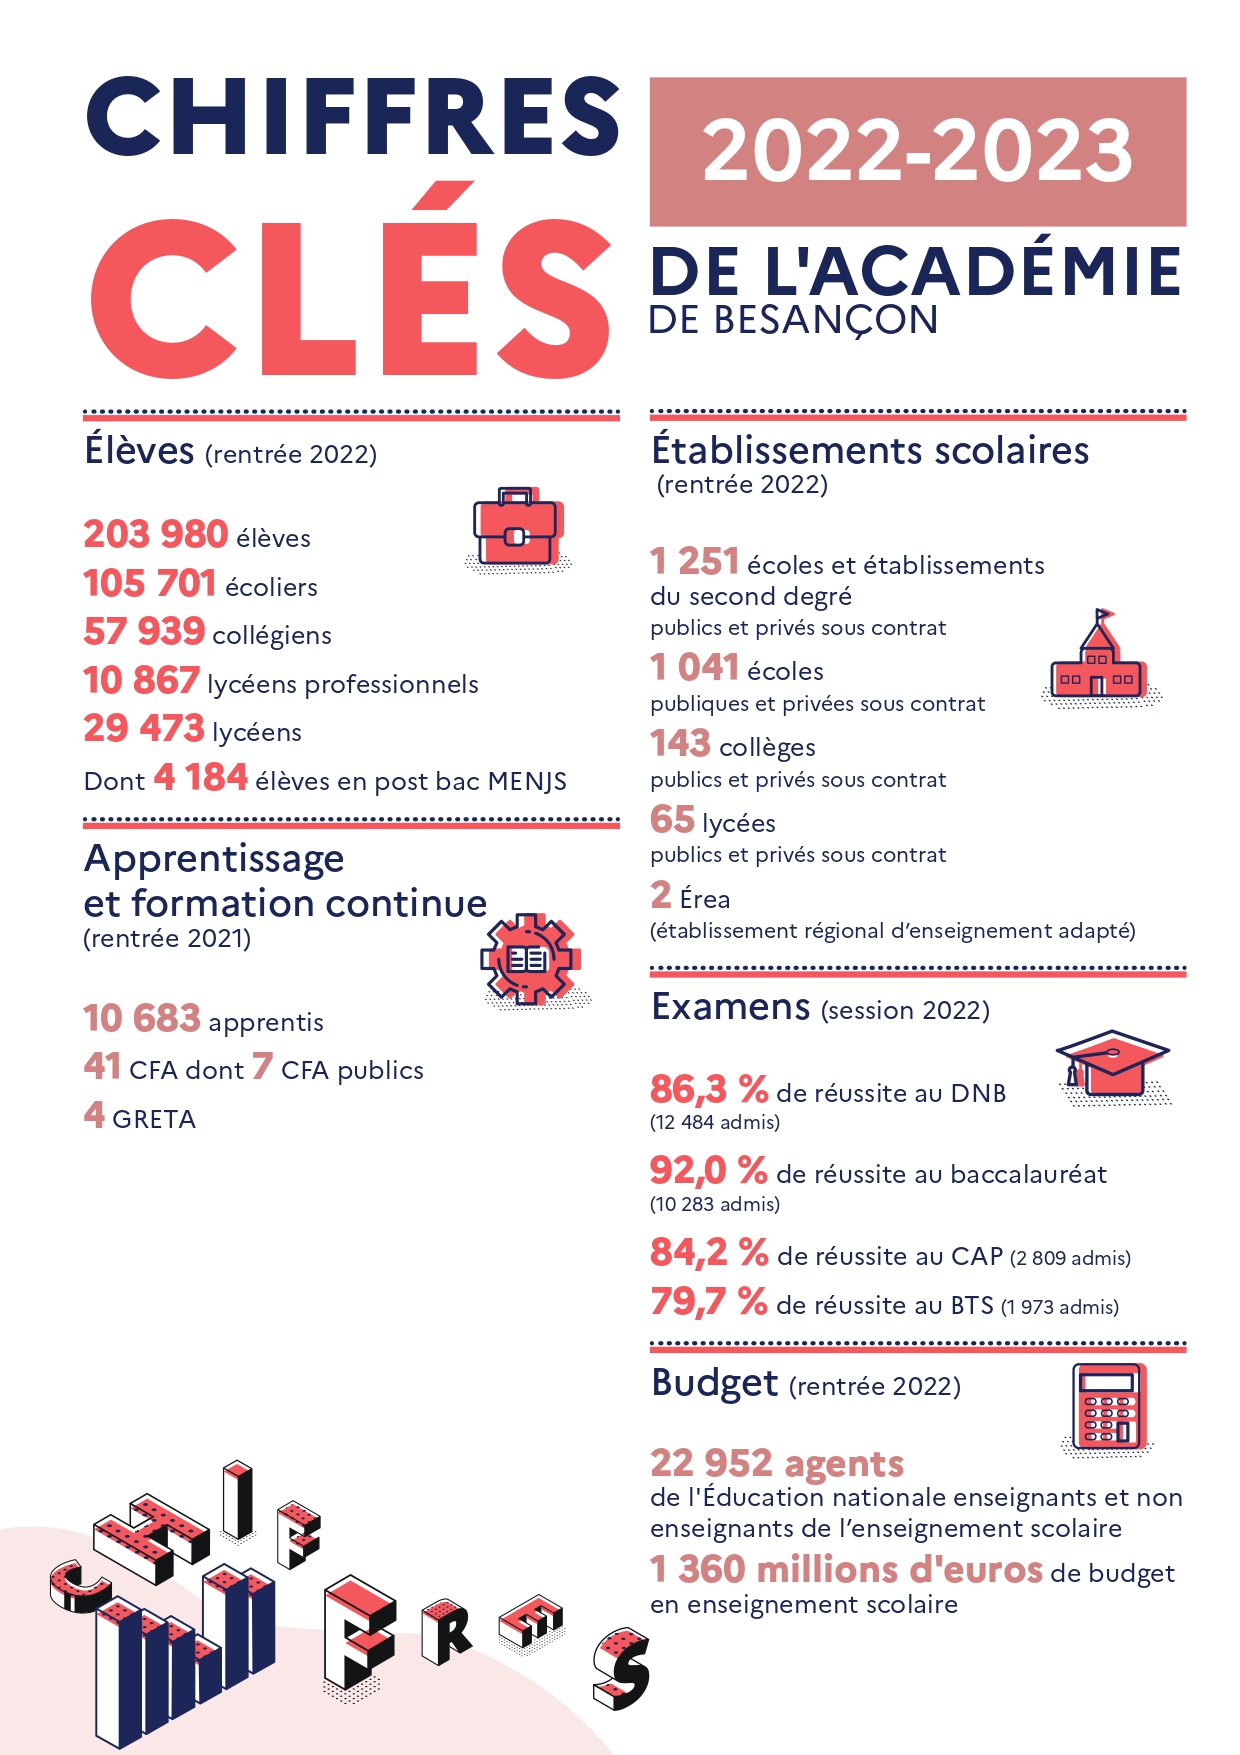 Chiffres clés | Académie de Besançon | 2022-2023